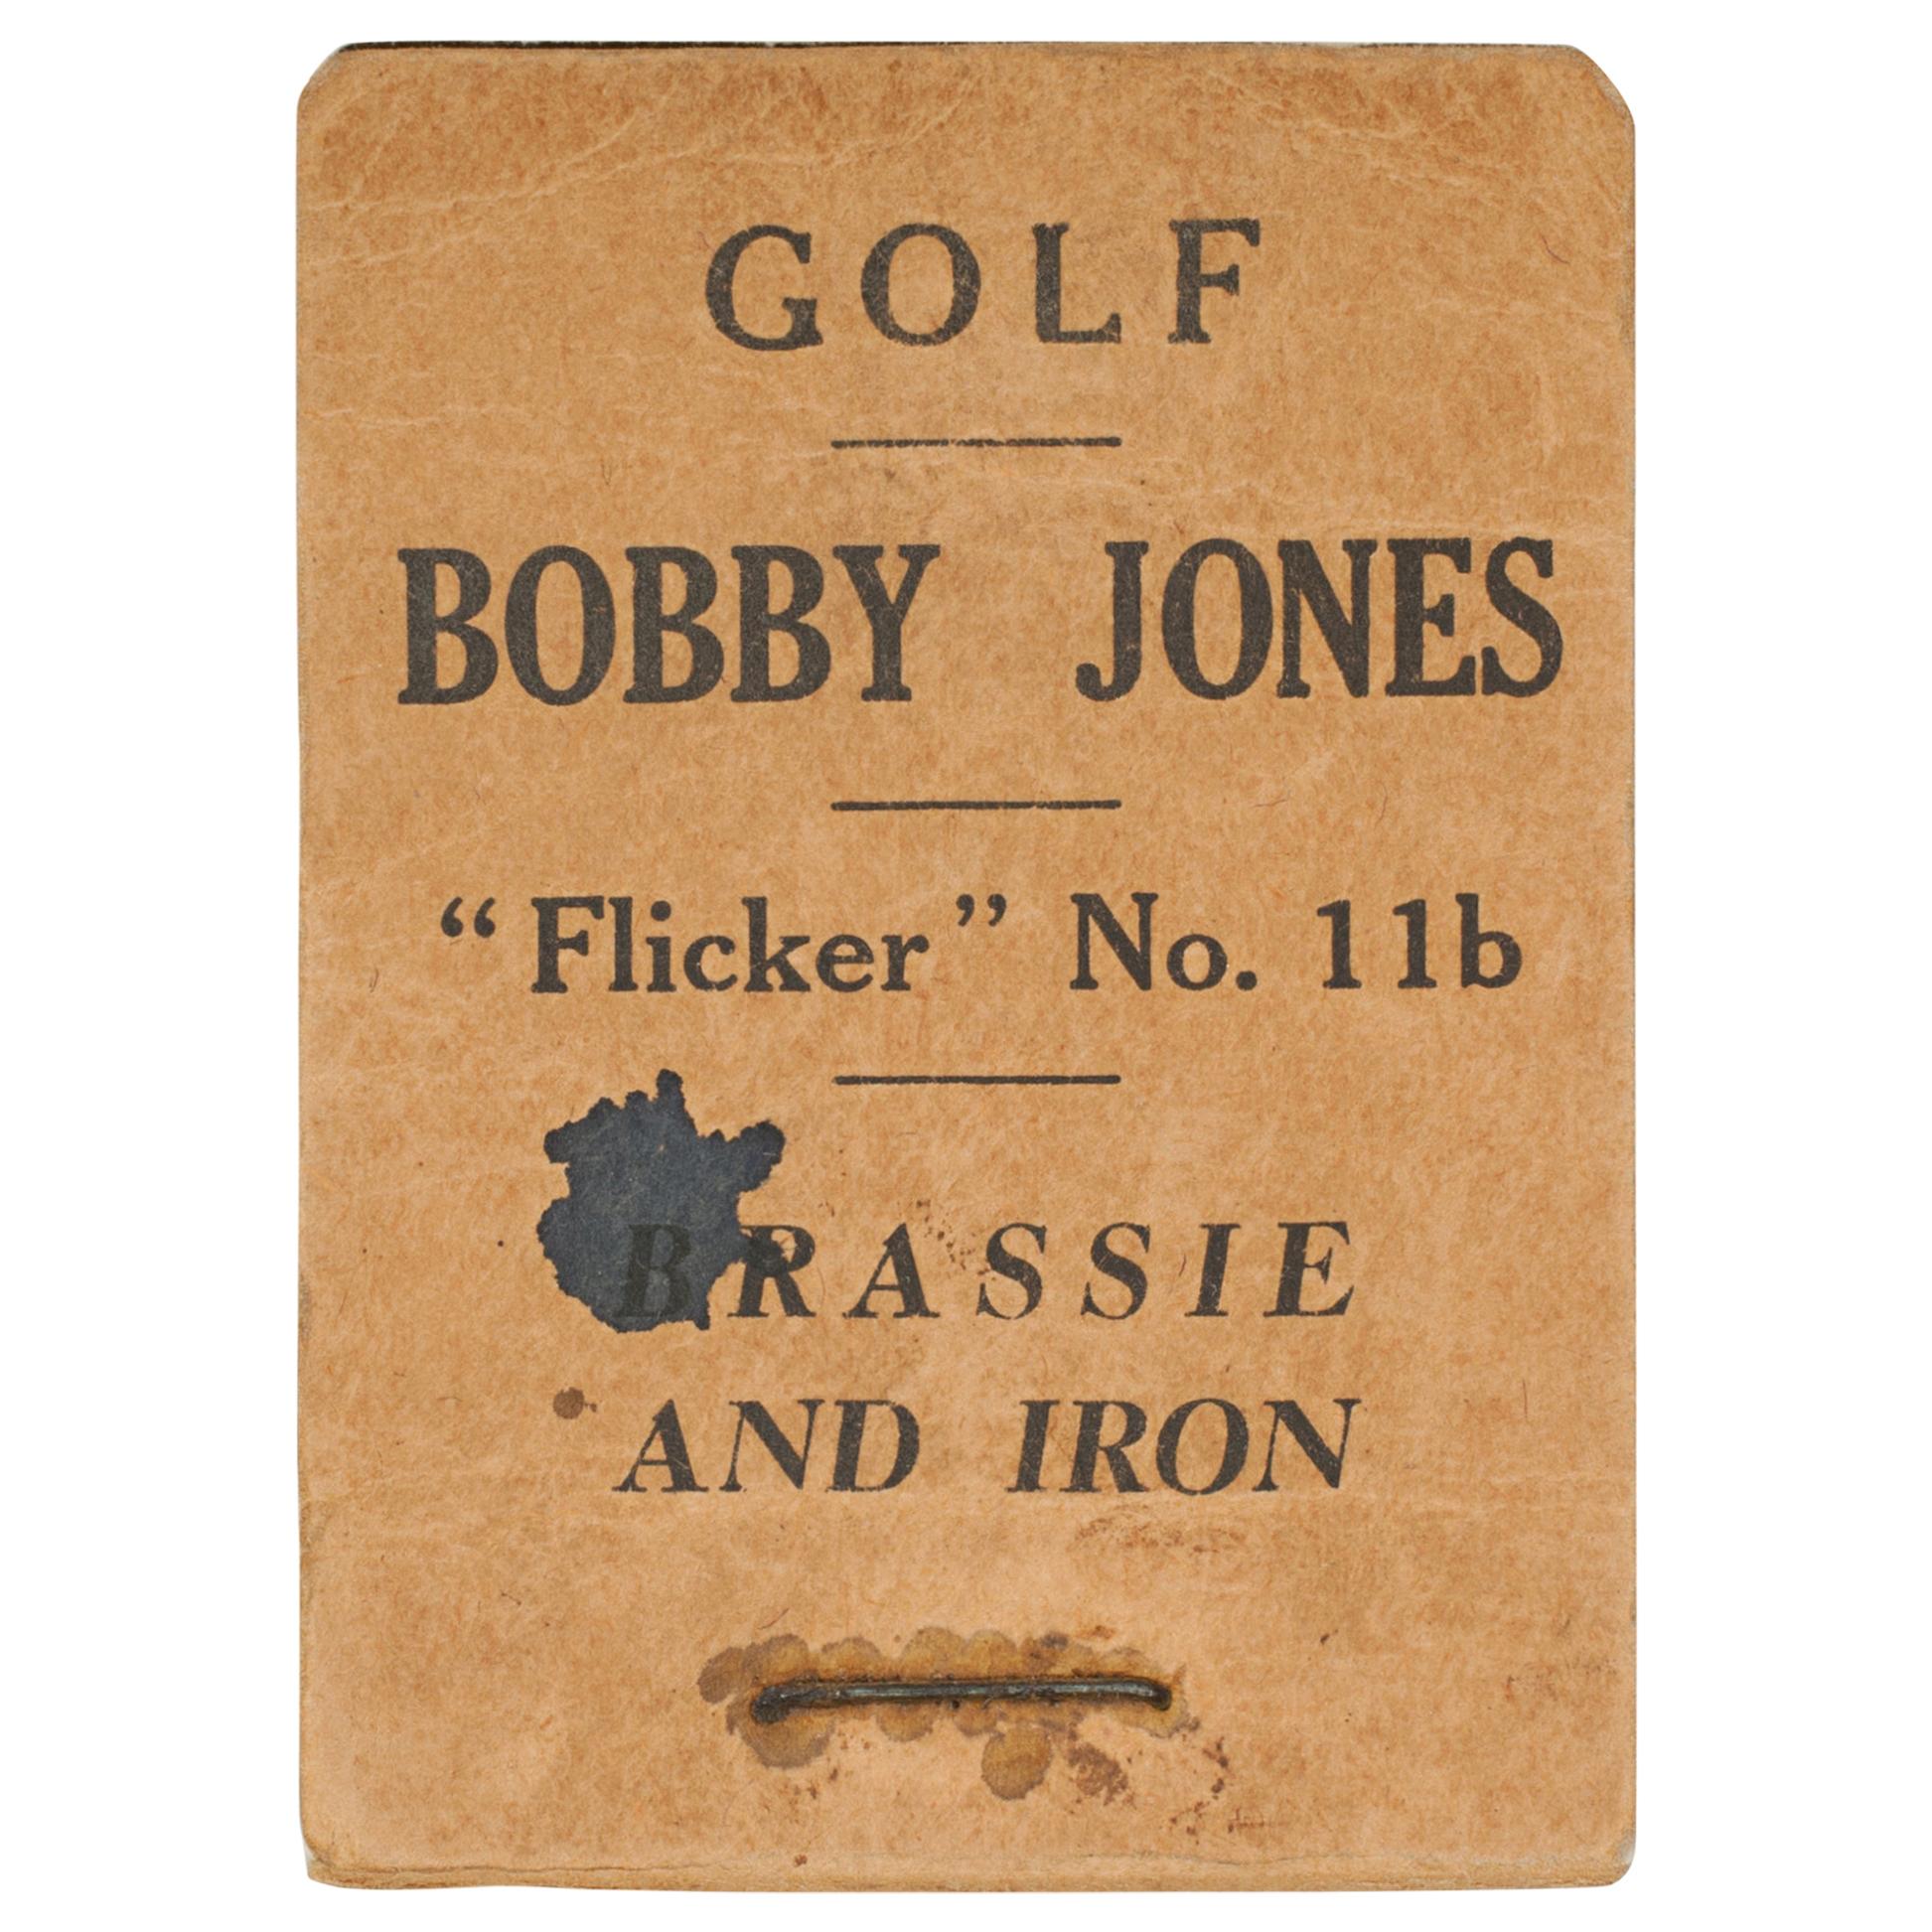 Vintage Golf Flicker Book, Bobby Jones, Brassie and Iron